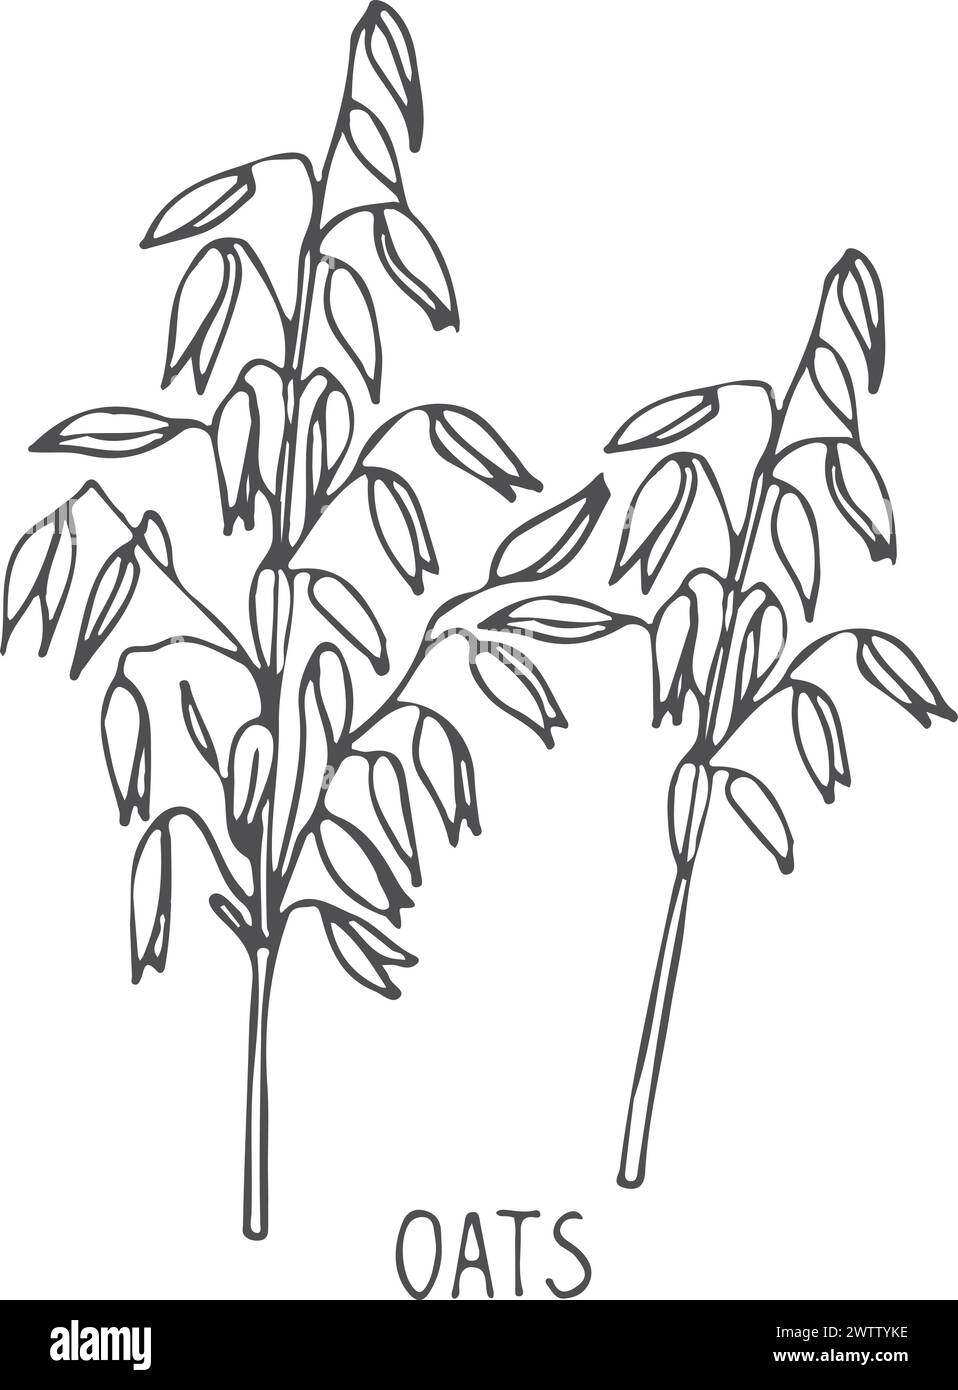 Haferpflanze. Skizze der Getreidekörner-Pflanze Stock Vektor